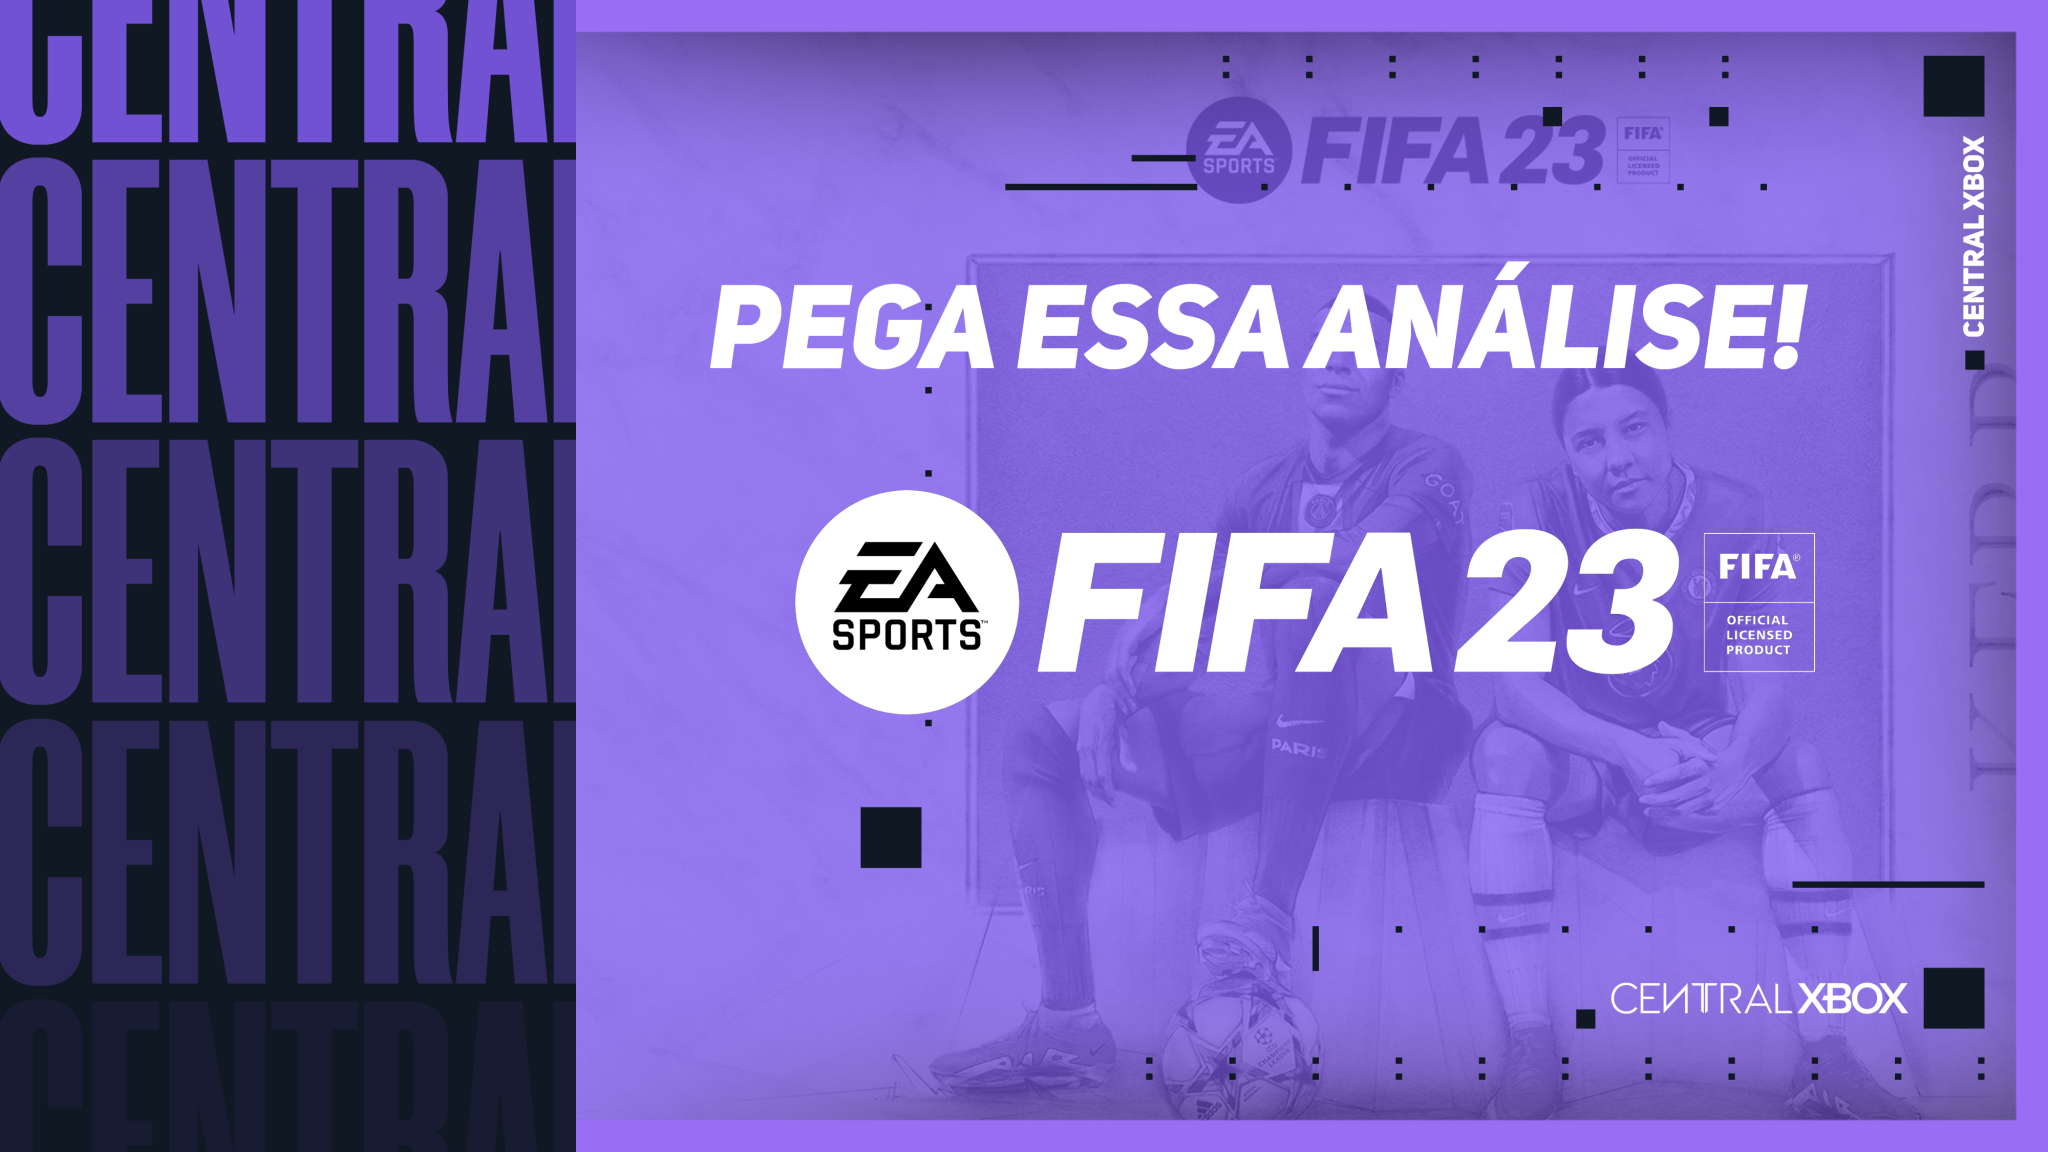 REVIEW  FIFA 23 encerra ciclo com evolução gráfica sutil e